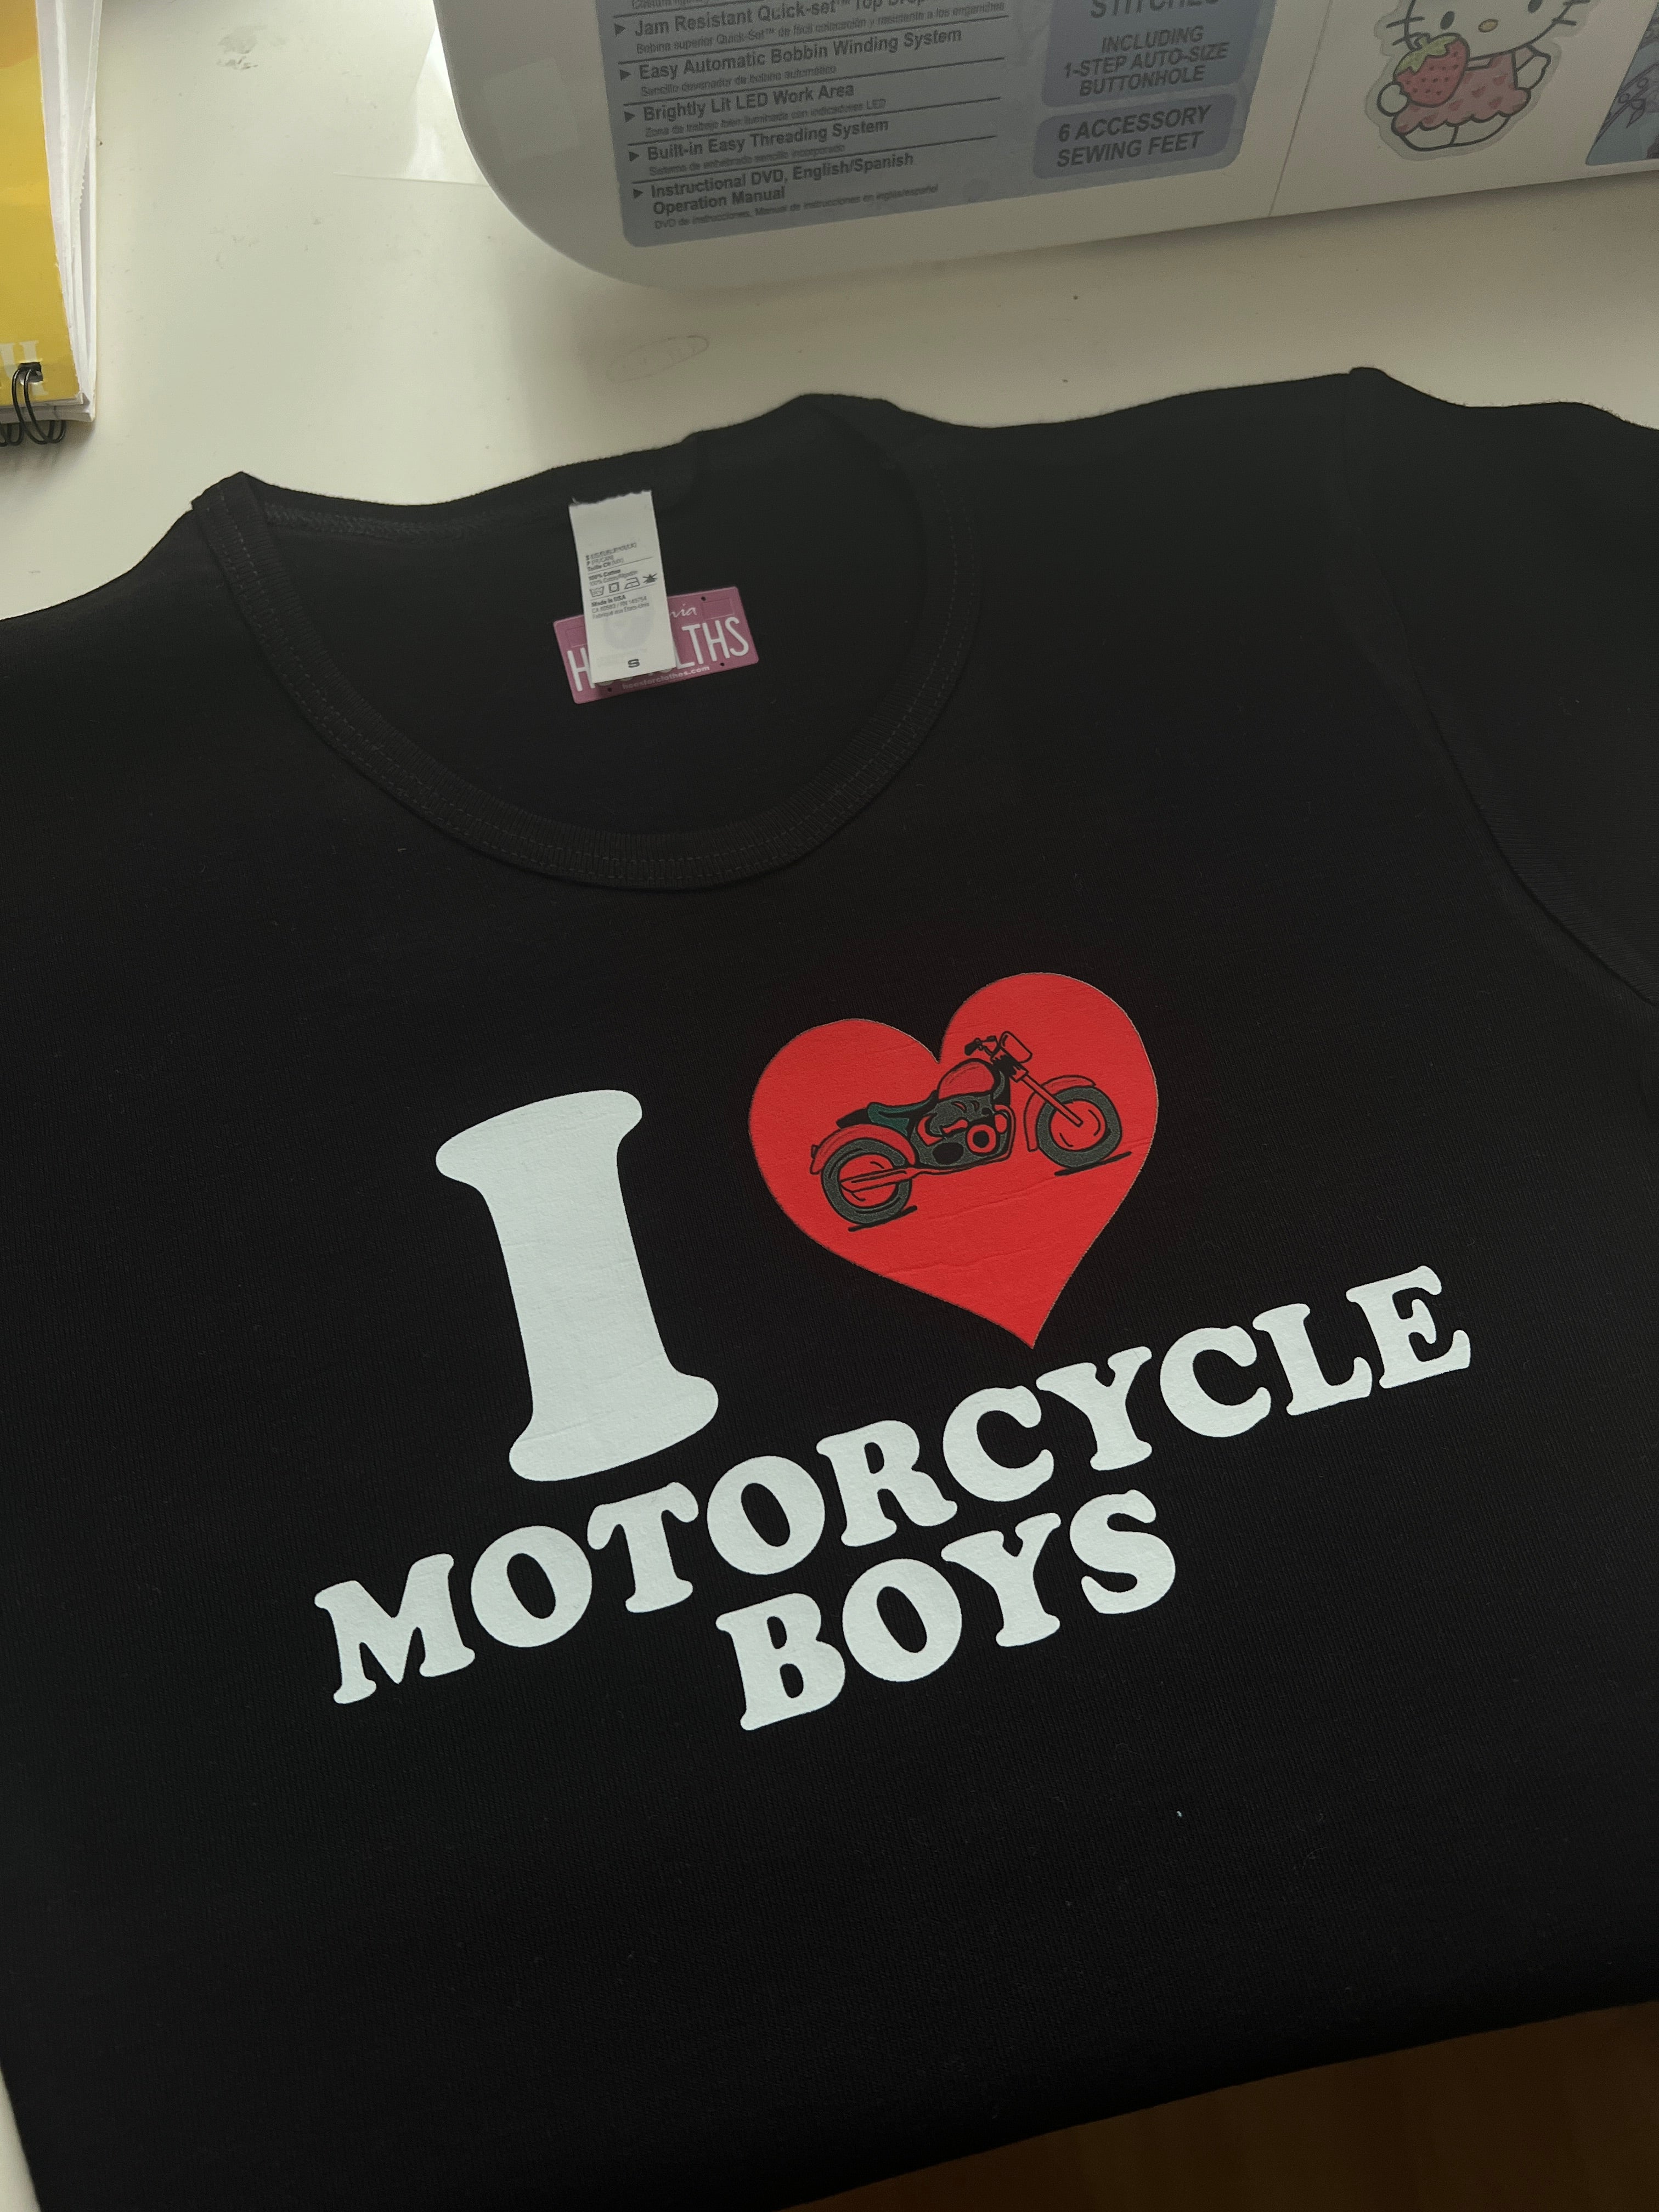 I <3 Motorcycle Boys Baby Tee